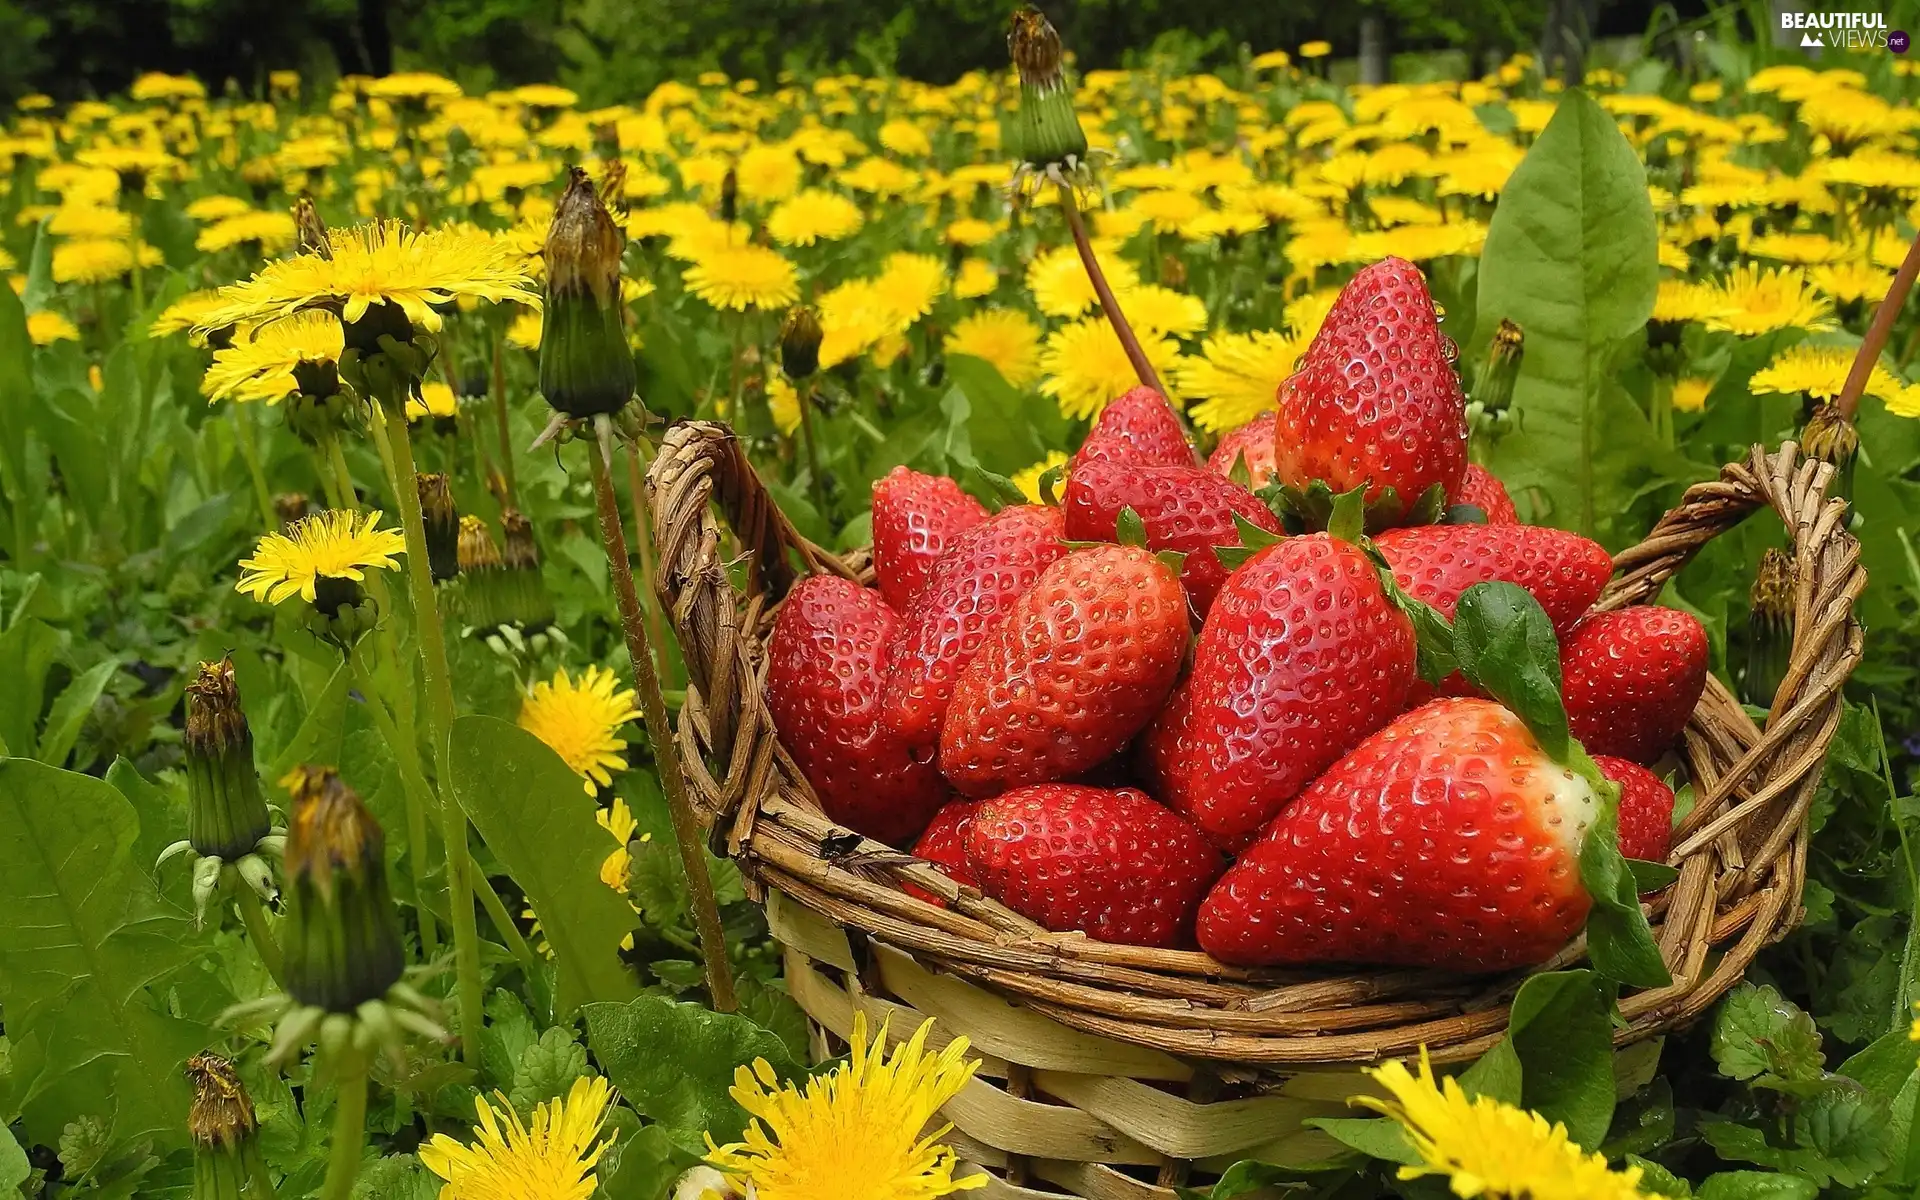 Meadow, strawberries, dandelions, basket